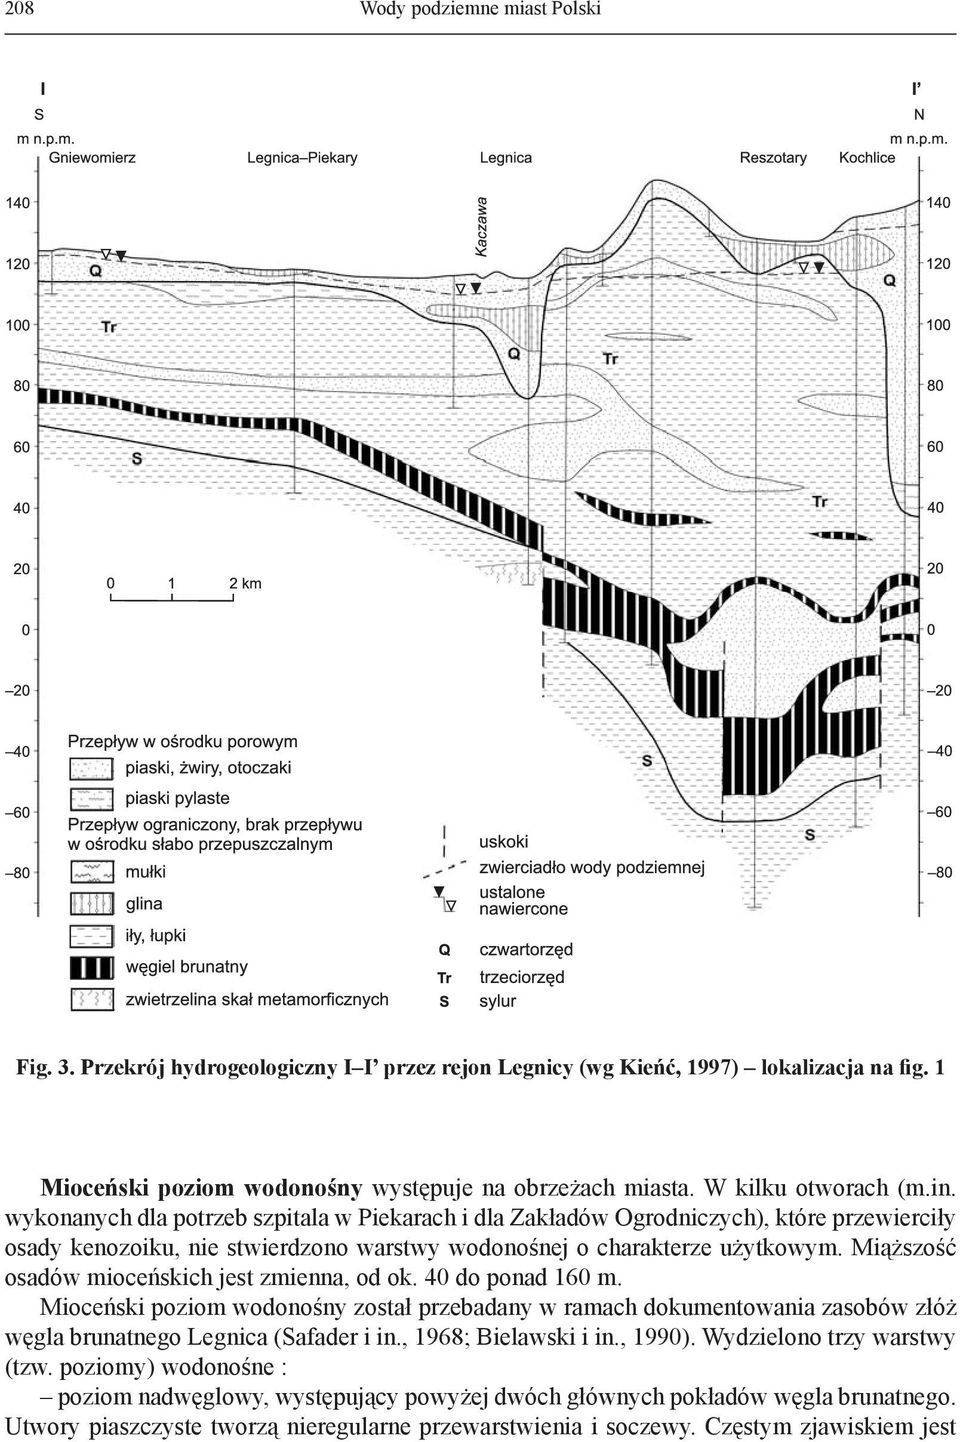 Miąższość osadów mioceńskich jest zmienna, od ok. 40 do ponad 160 m. Mioceński poziom wodonośny został przebadany w ramach dokumentowania zasobów złóż węgla brunatnego Legnica (Safader i in.